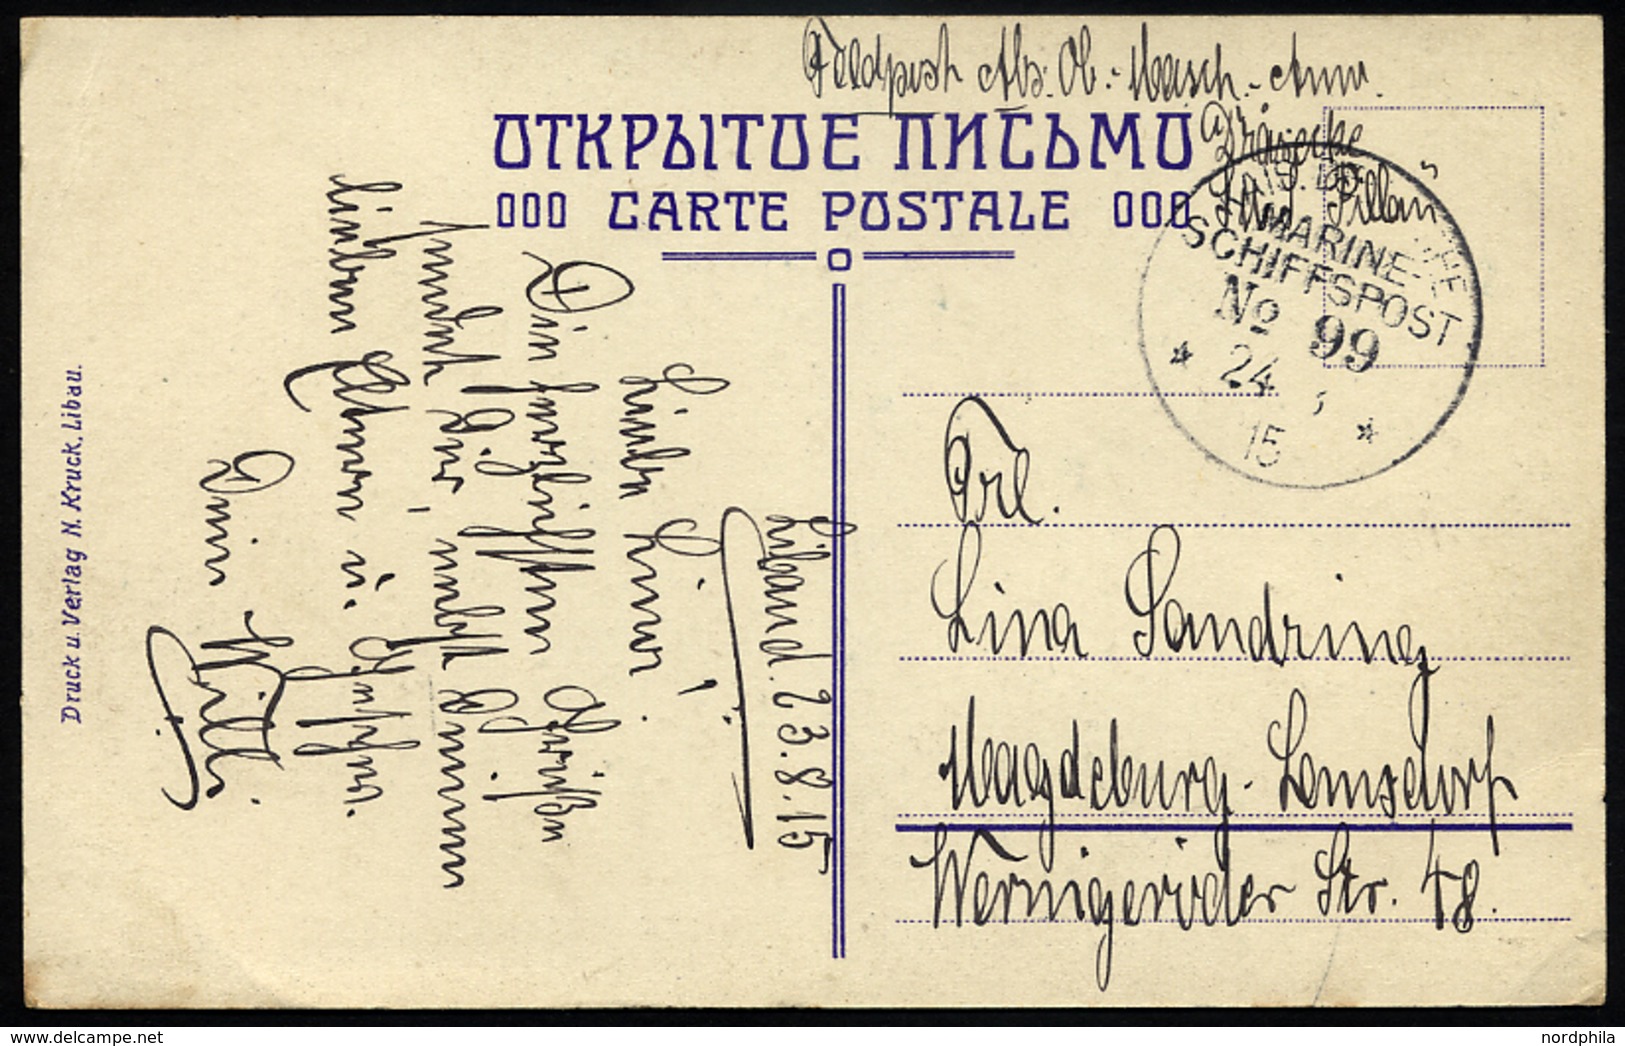 MSP VON 1914 - 1918 99 (Kleiner Kreuzer PILLAU), 24.8.1915, Feldpost-Ansichtskarte Von Bord Der Pillau, Pracht - Schiffahrt